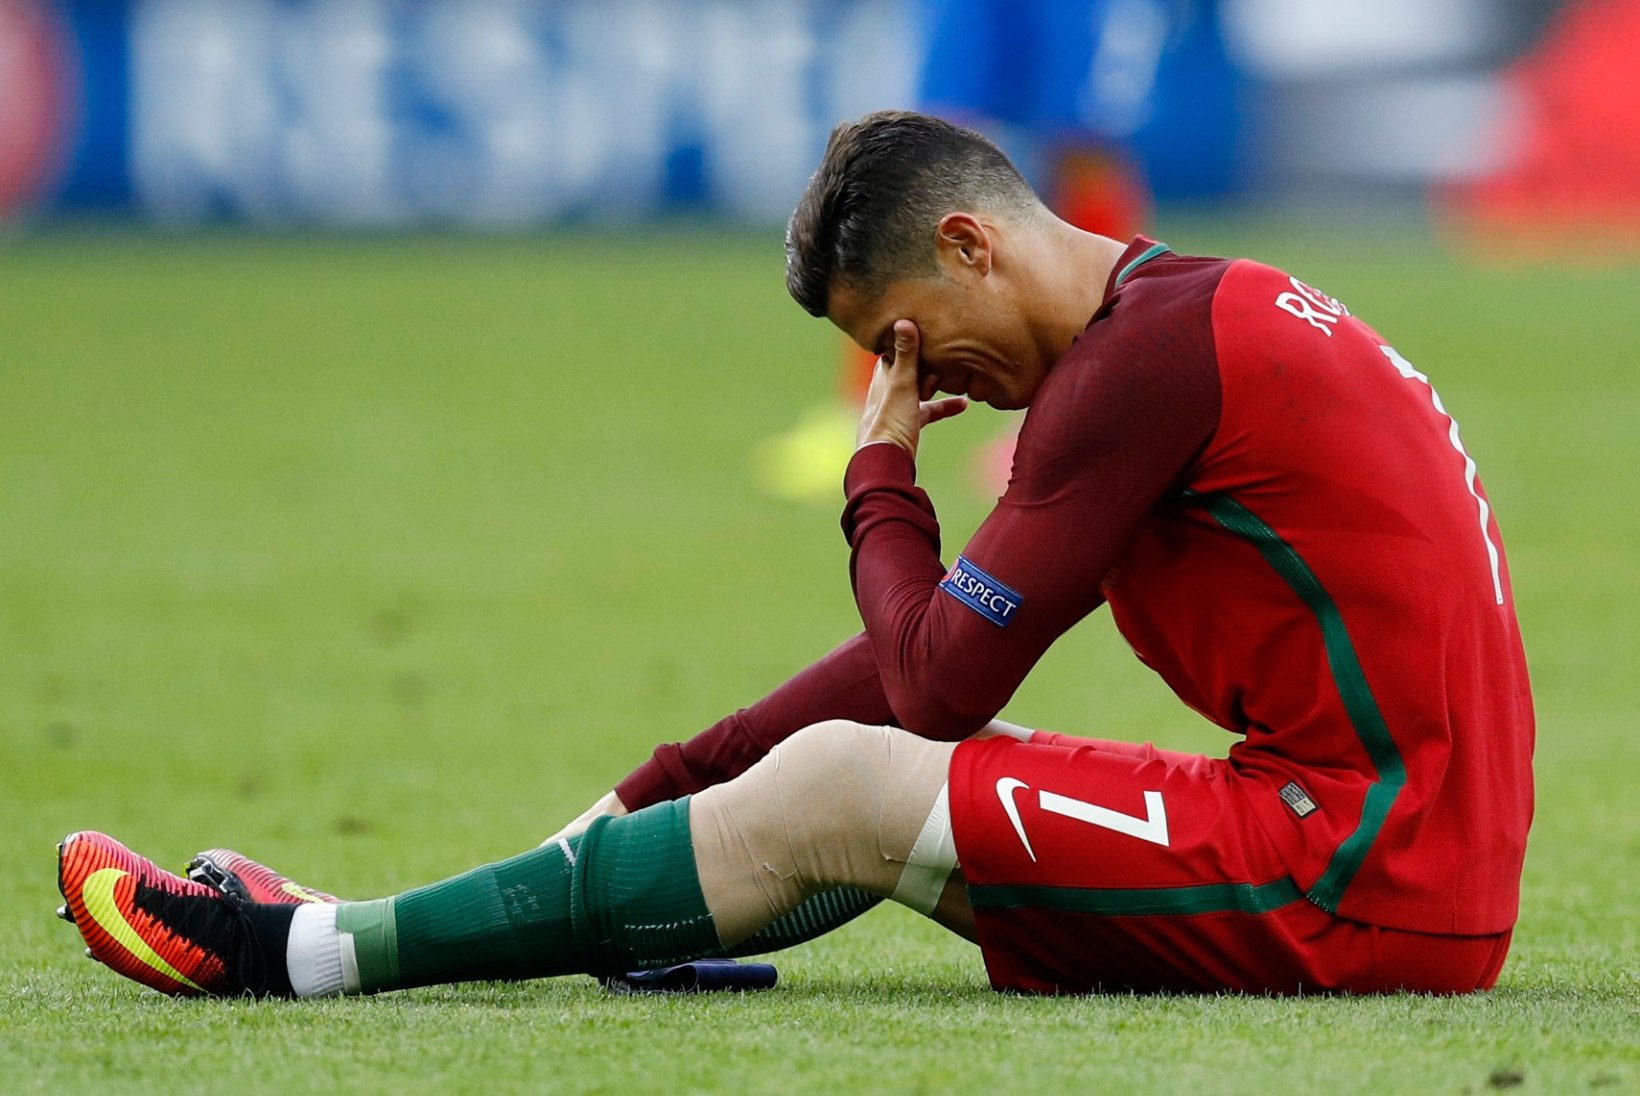 ÕHTULEHT PARIISIS | "Cristiano Ronaldo" – 25minutiline tragöödia kolmes vaatuses